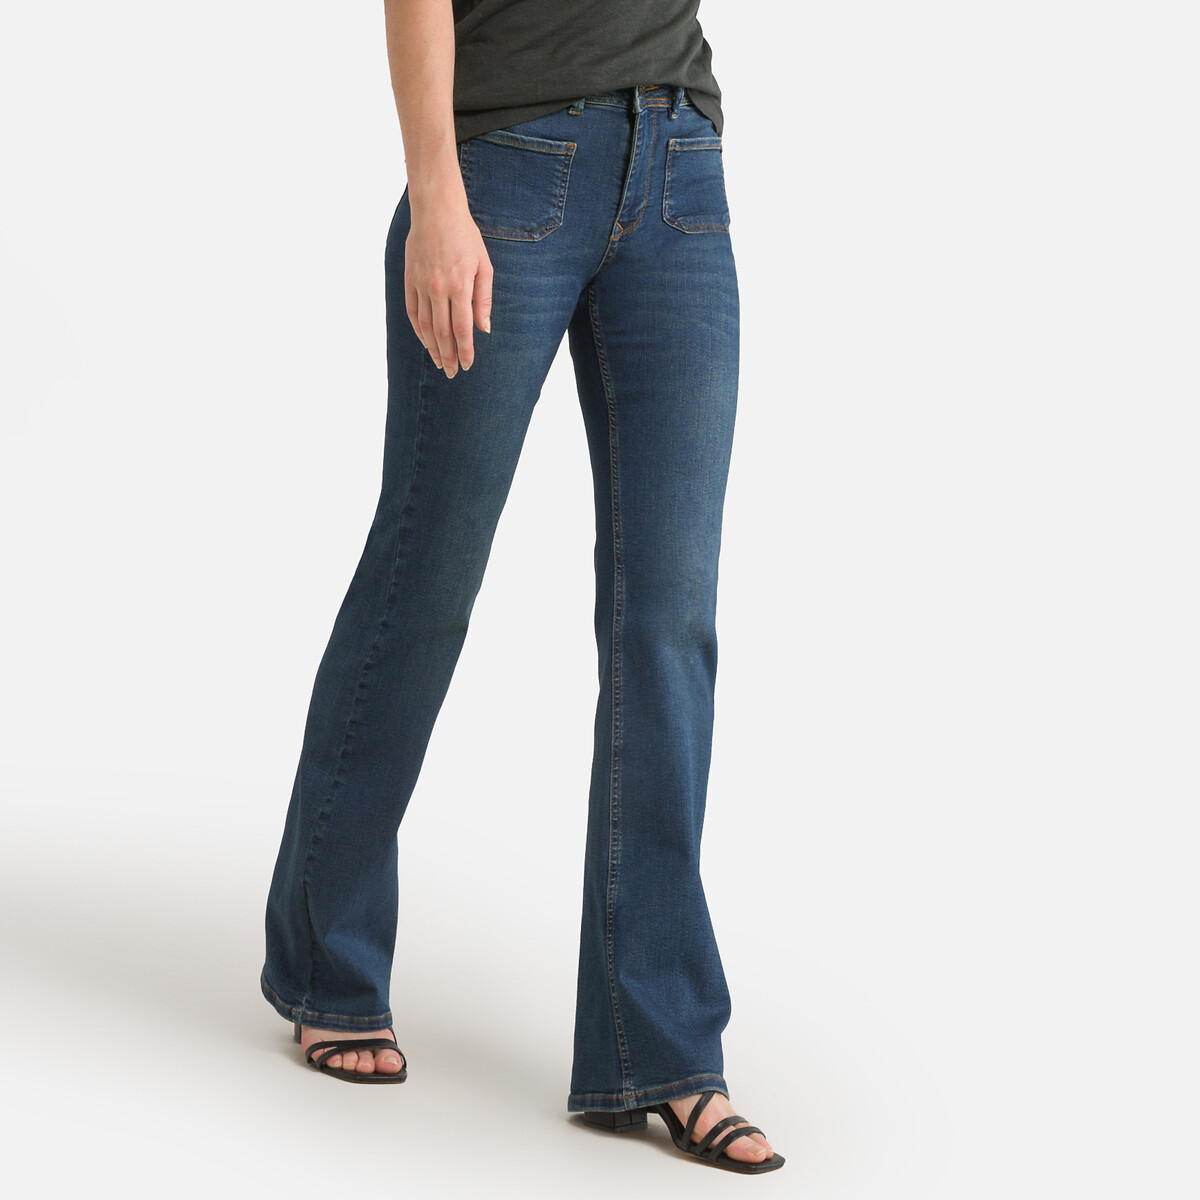 Джинсы расклешенные с высокой посадкой S синий джинсы расклешенные с высокой посадкой xl синий